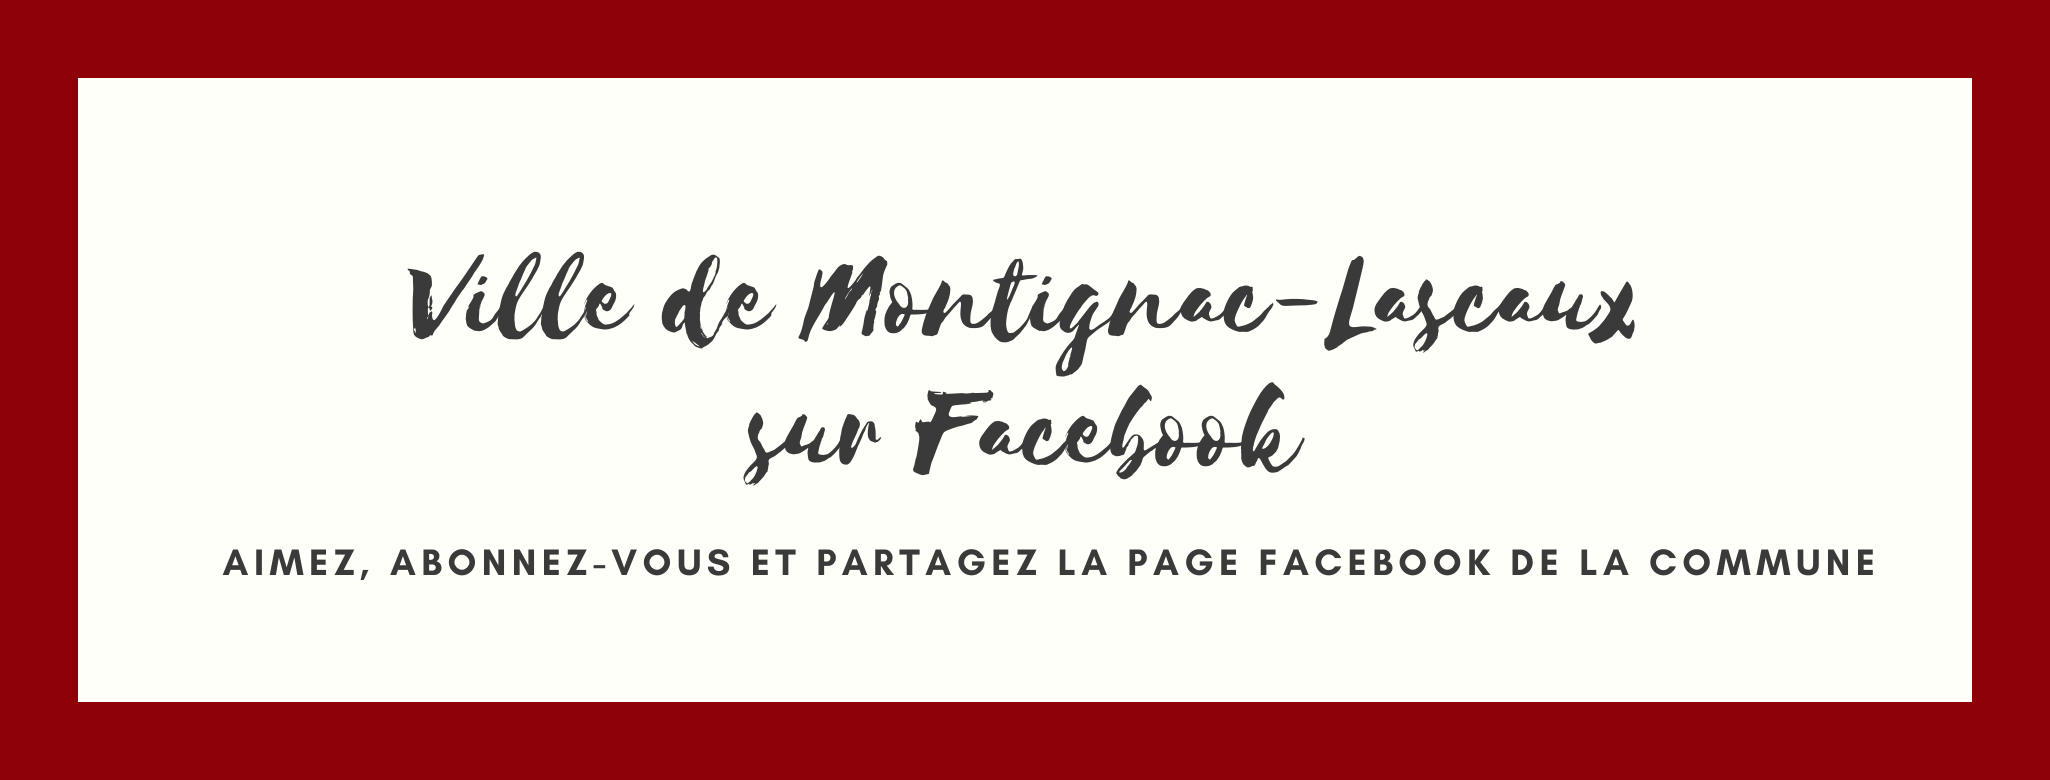 Facebook ville de Montignac-Lascaux